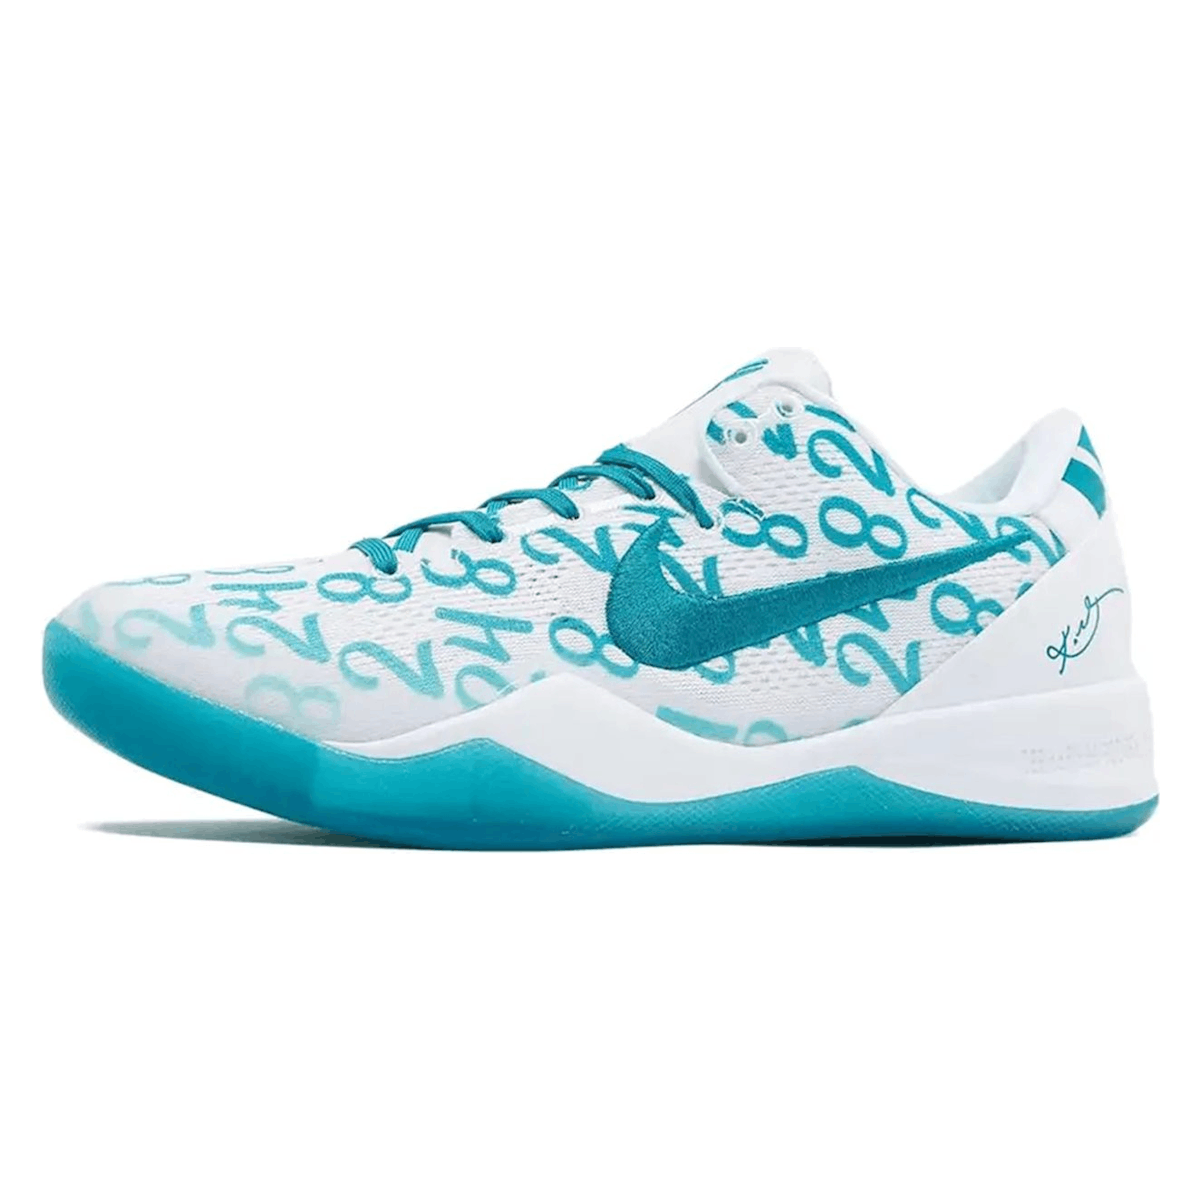 Nike Kobe 8 Protro "Aqua"